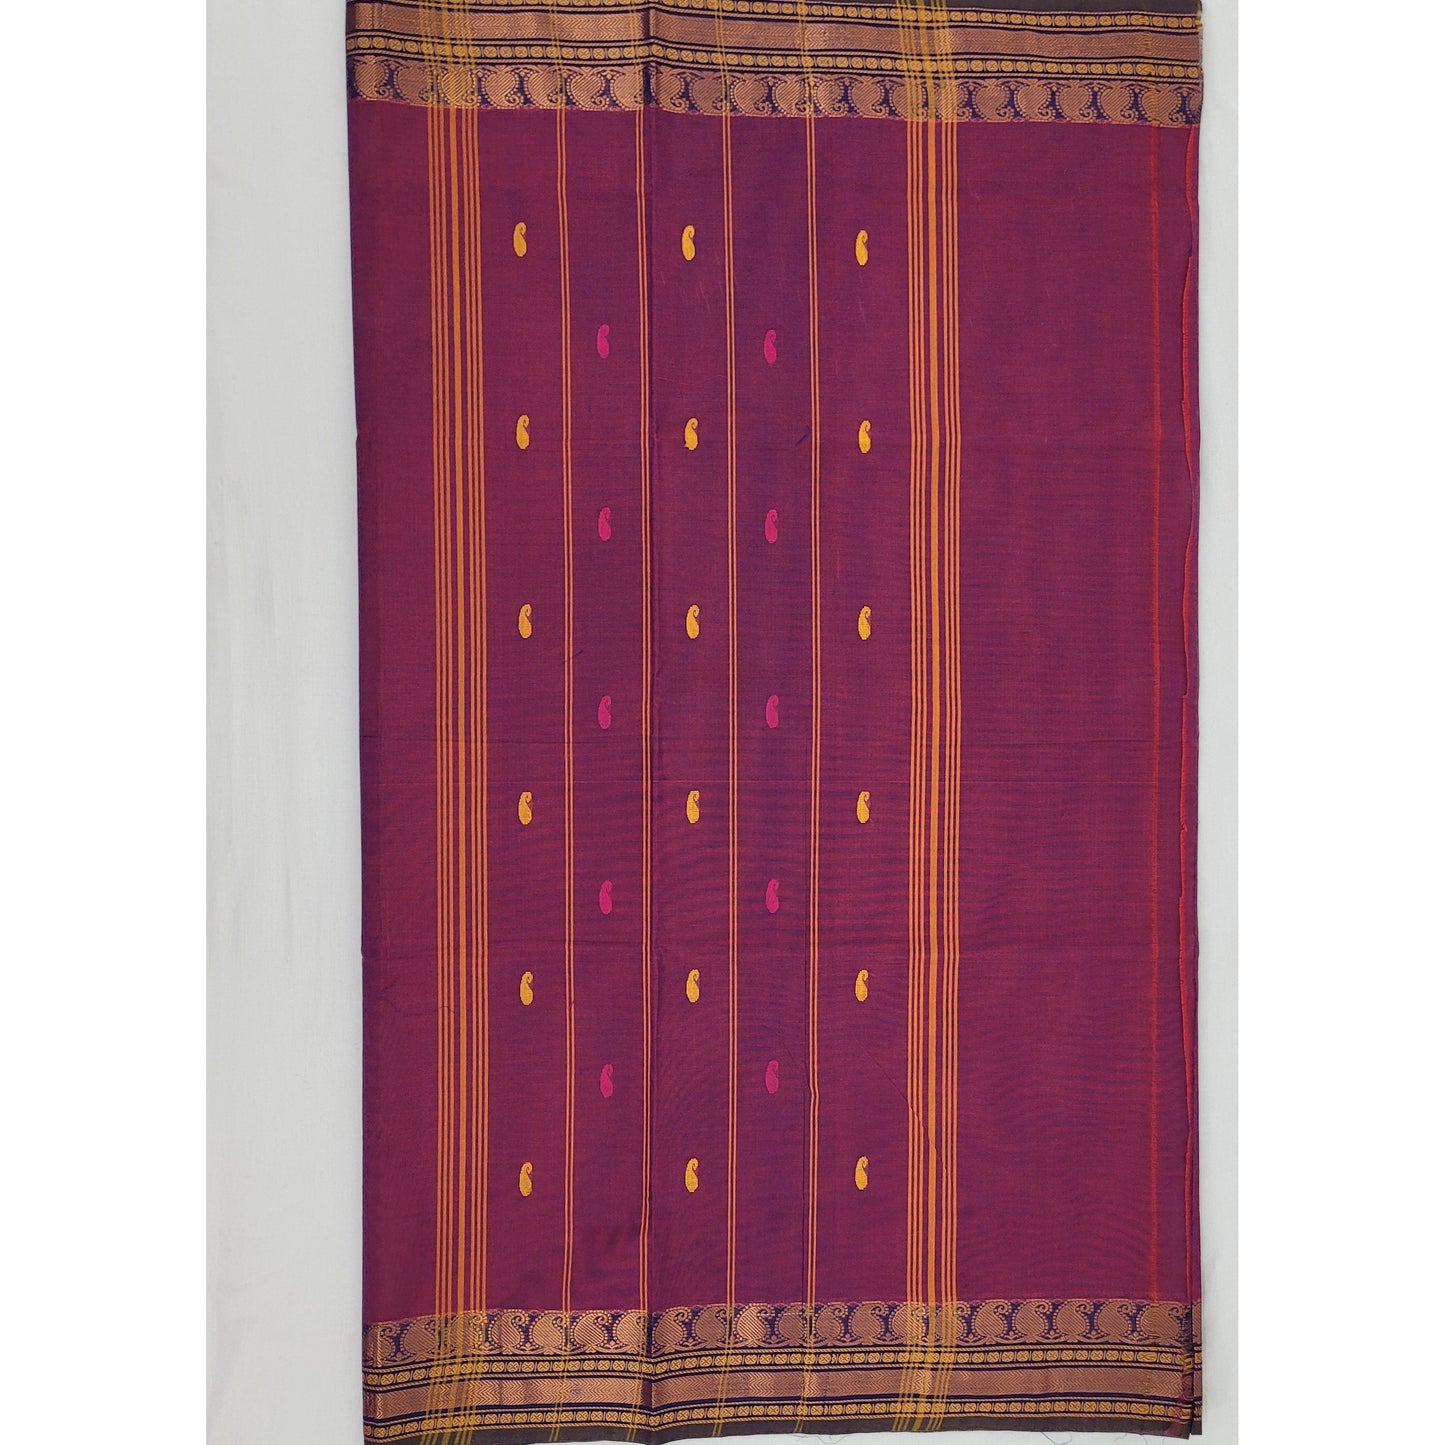 Dark Falsa Color Venkatagiri Handloom Cotton Saree - Vinshika